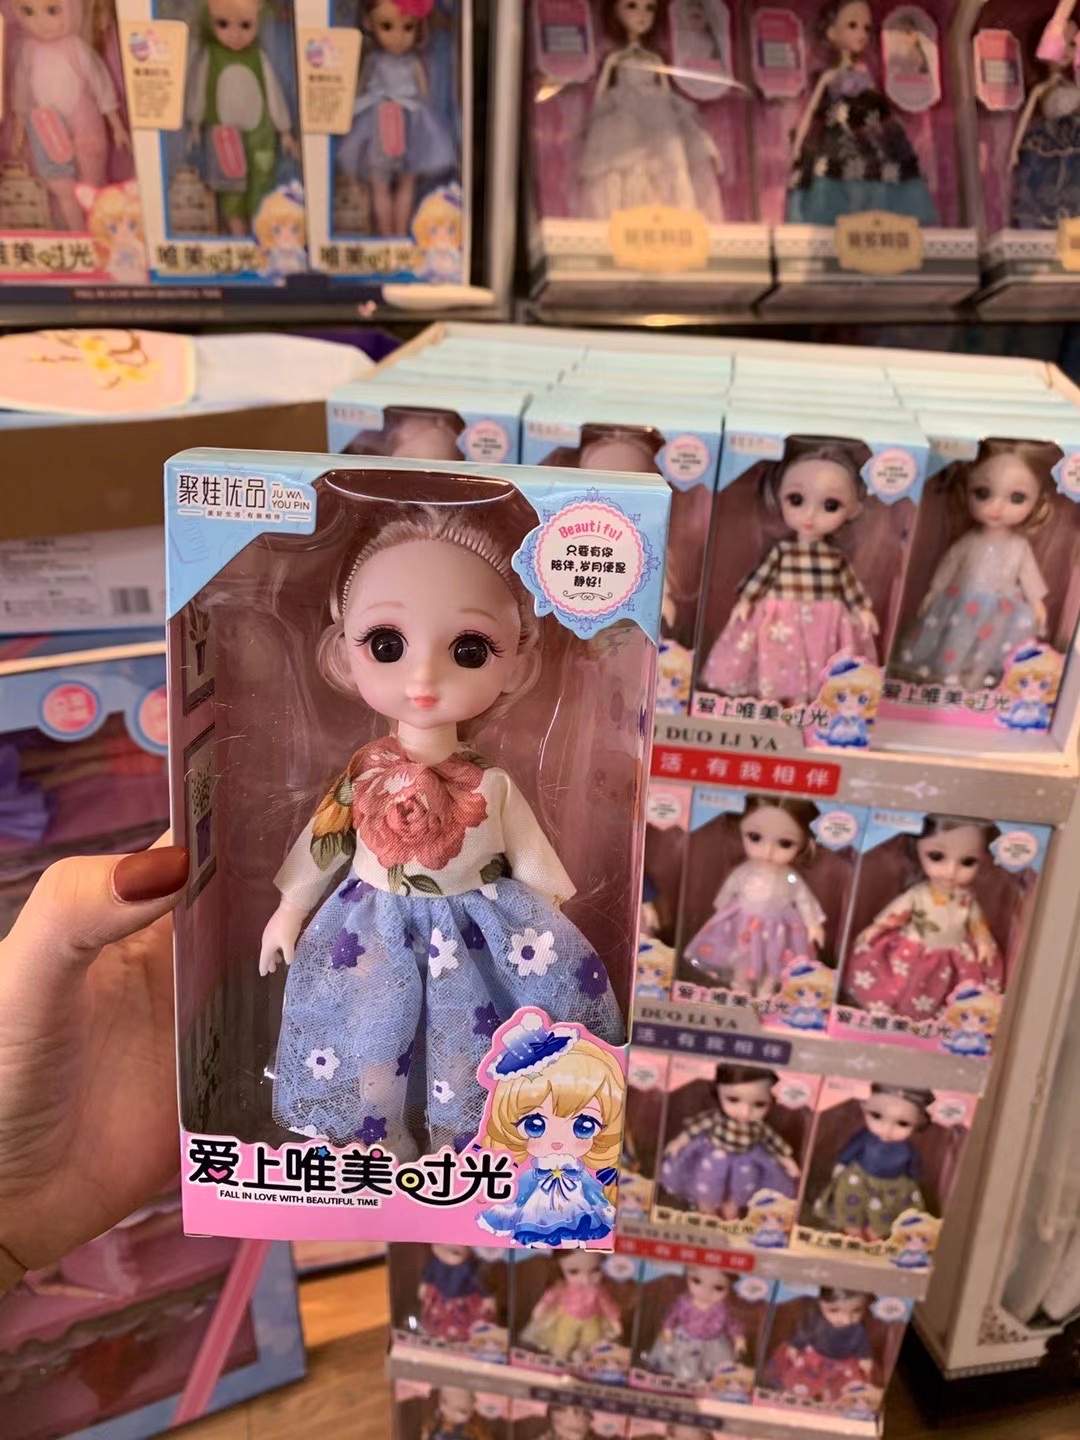 生日礼物 培训机构礼物 6寸 小萝莉娃娃 3D眼睛 超市专供 2021年娃娃爆款详情图2